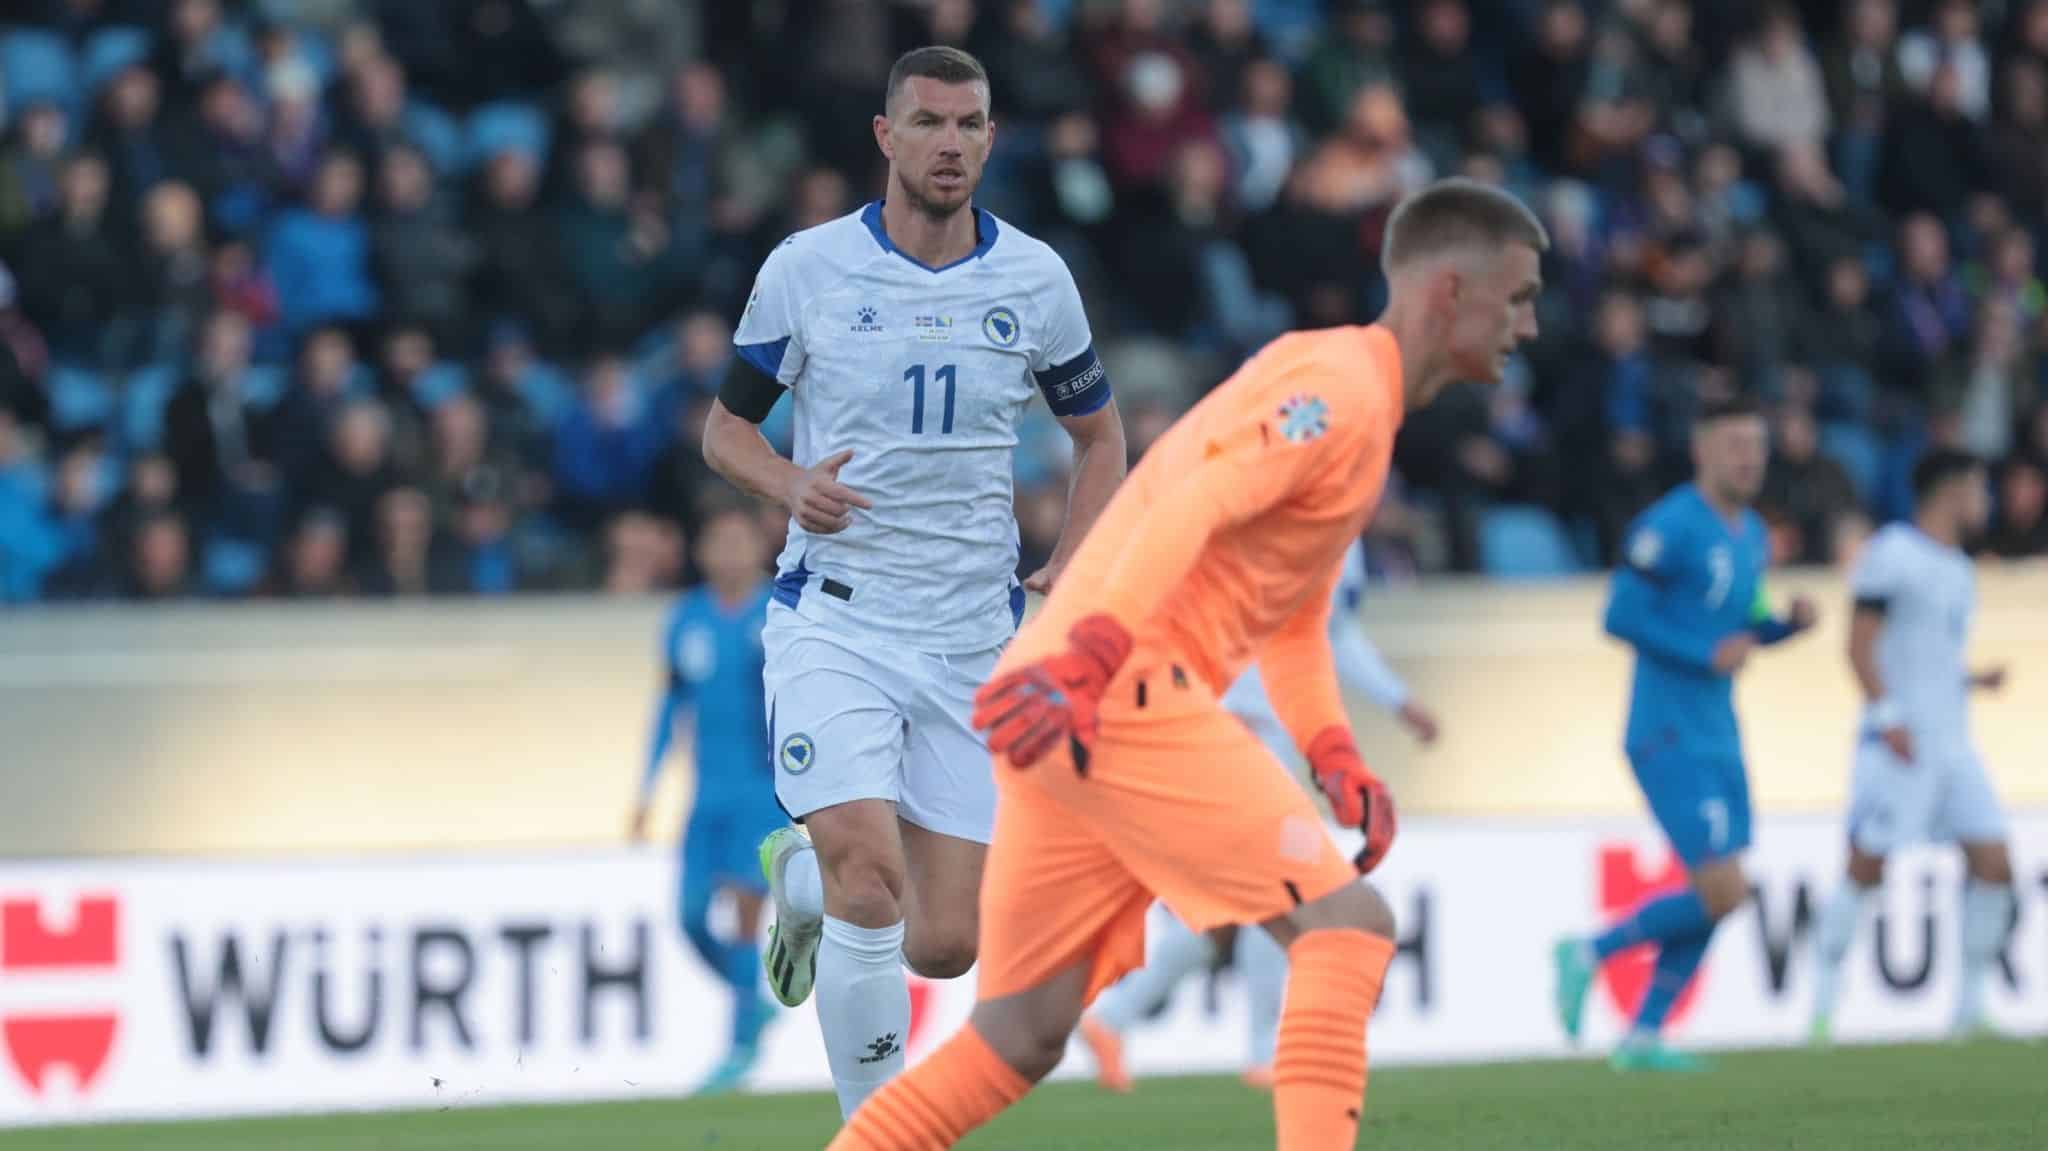 Porazom protiv Islanda izgubljene sve šanse za direktan plasman na Evropsko prvenstvo